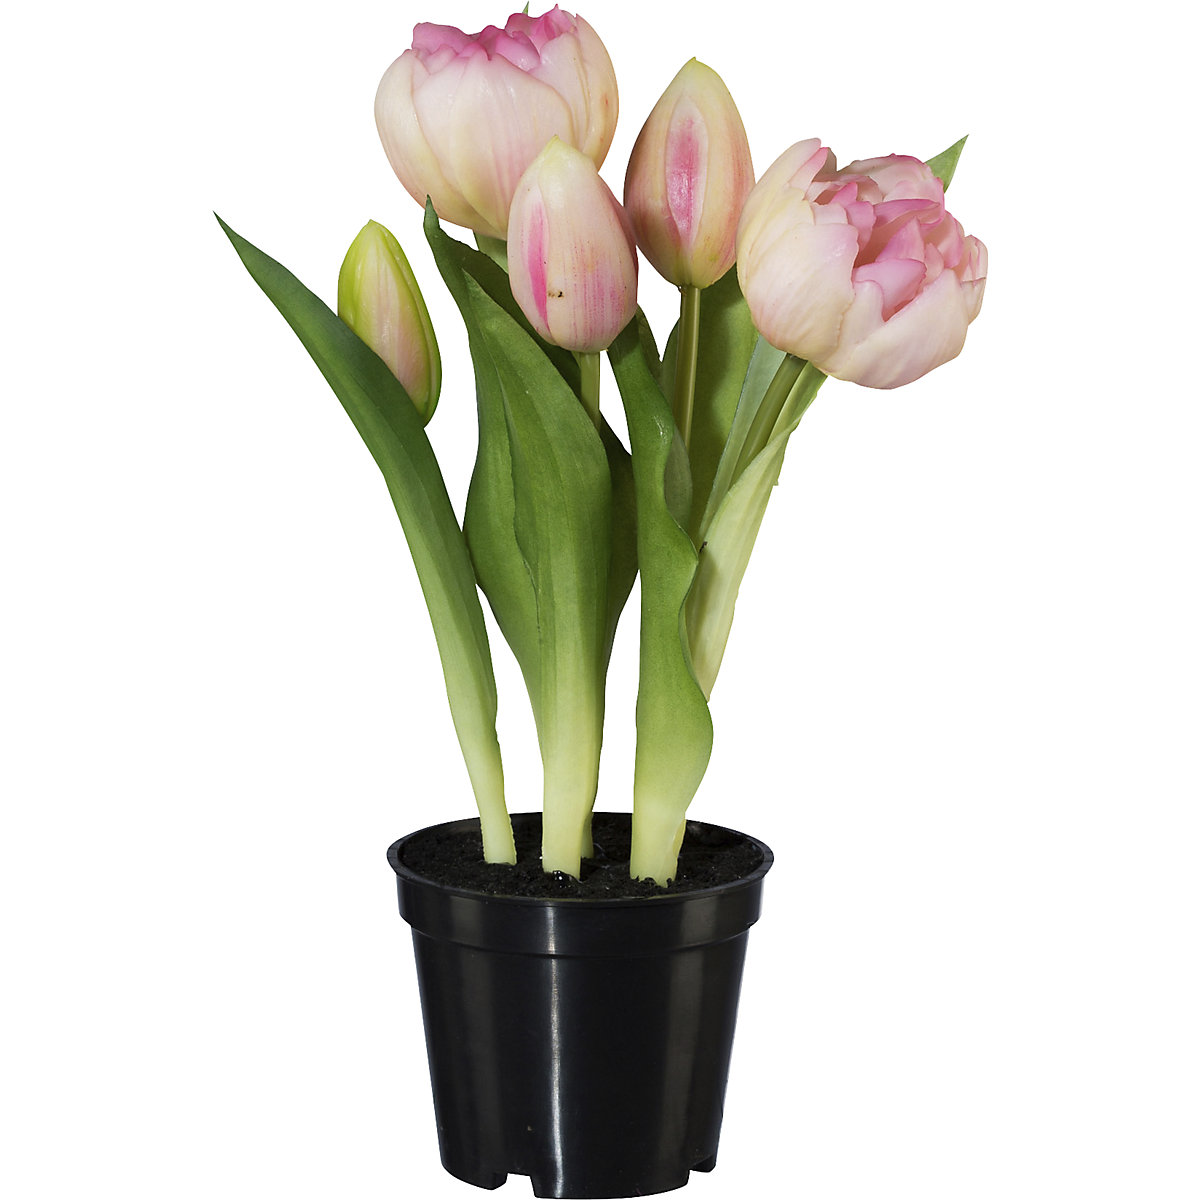 Tulipanes rellenos, real touch, en maceta (Imagen del producto 2)-1